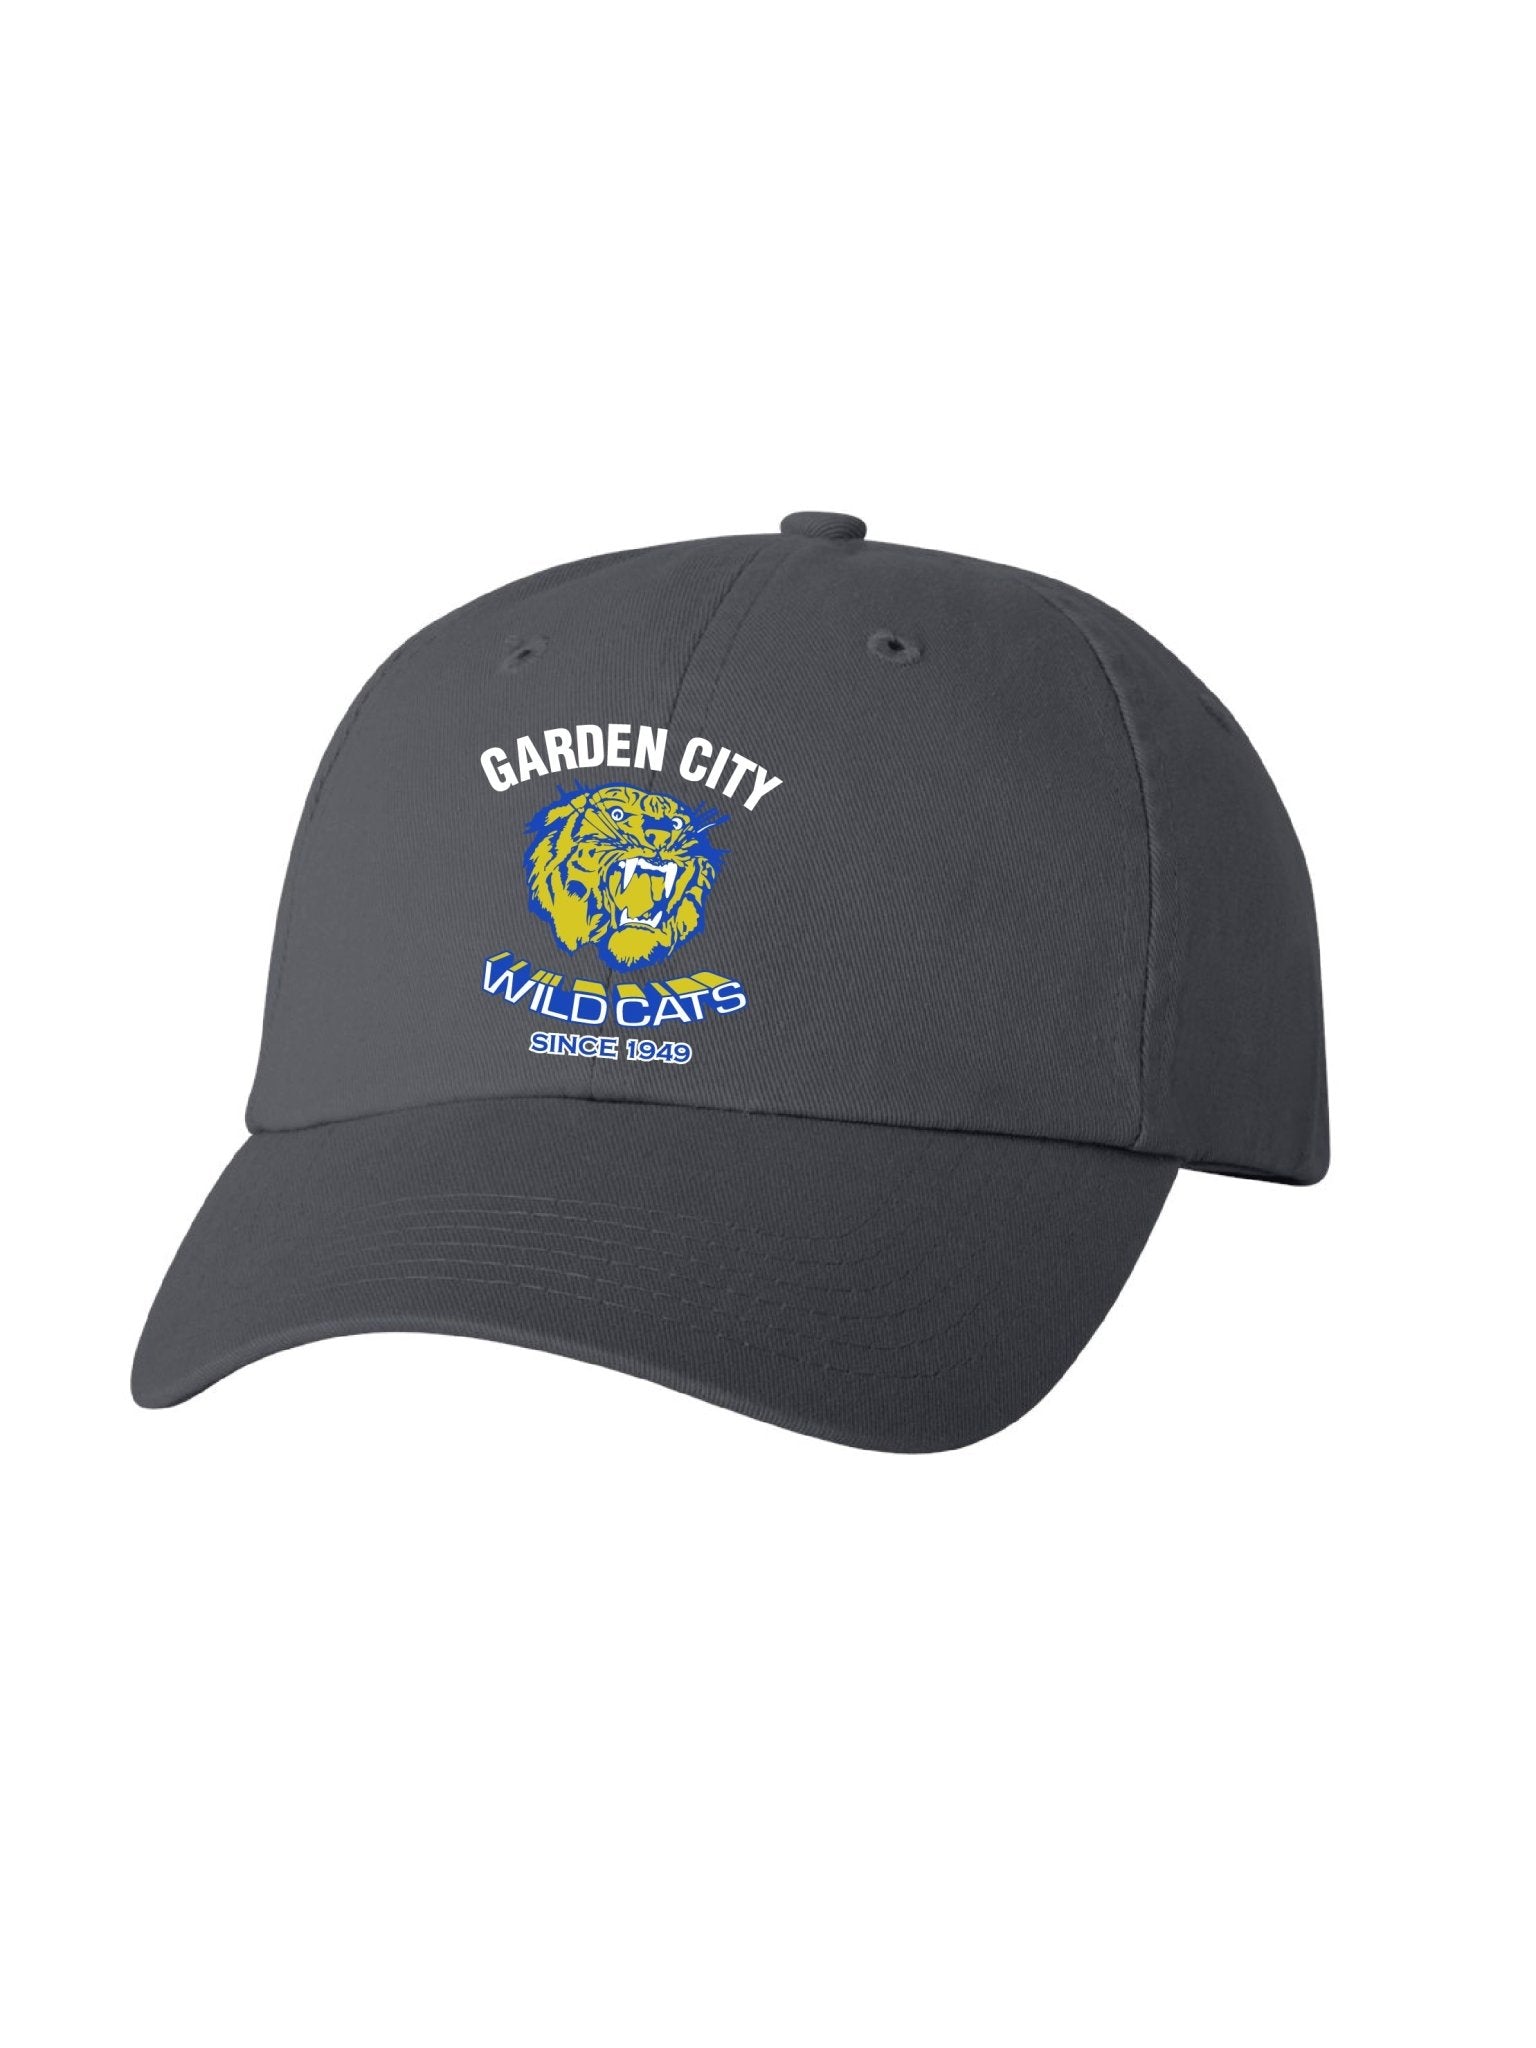 Garden City Wildcats Since 1949 Baseball Cap - Oddball Workshop